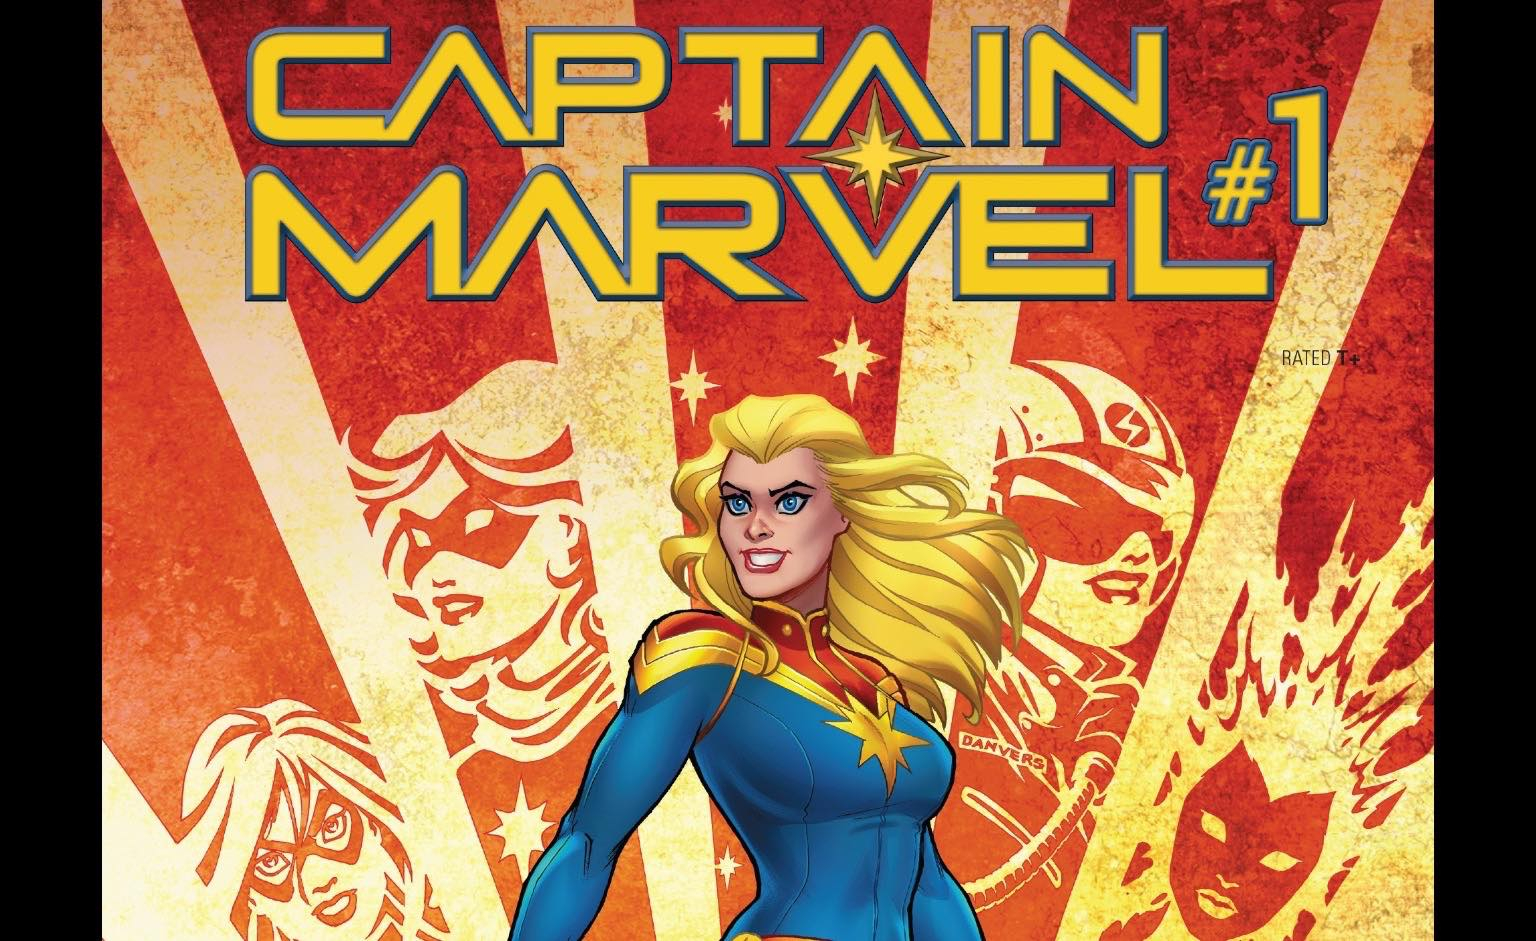 Капитан Марвел первый комикс. Келли Марвел. Comic book Day Марвел. Марвел комикс Captain Marvel #49 обложка. Марвел 1.16 5